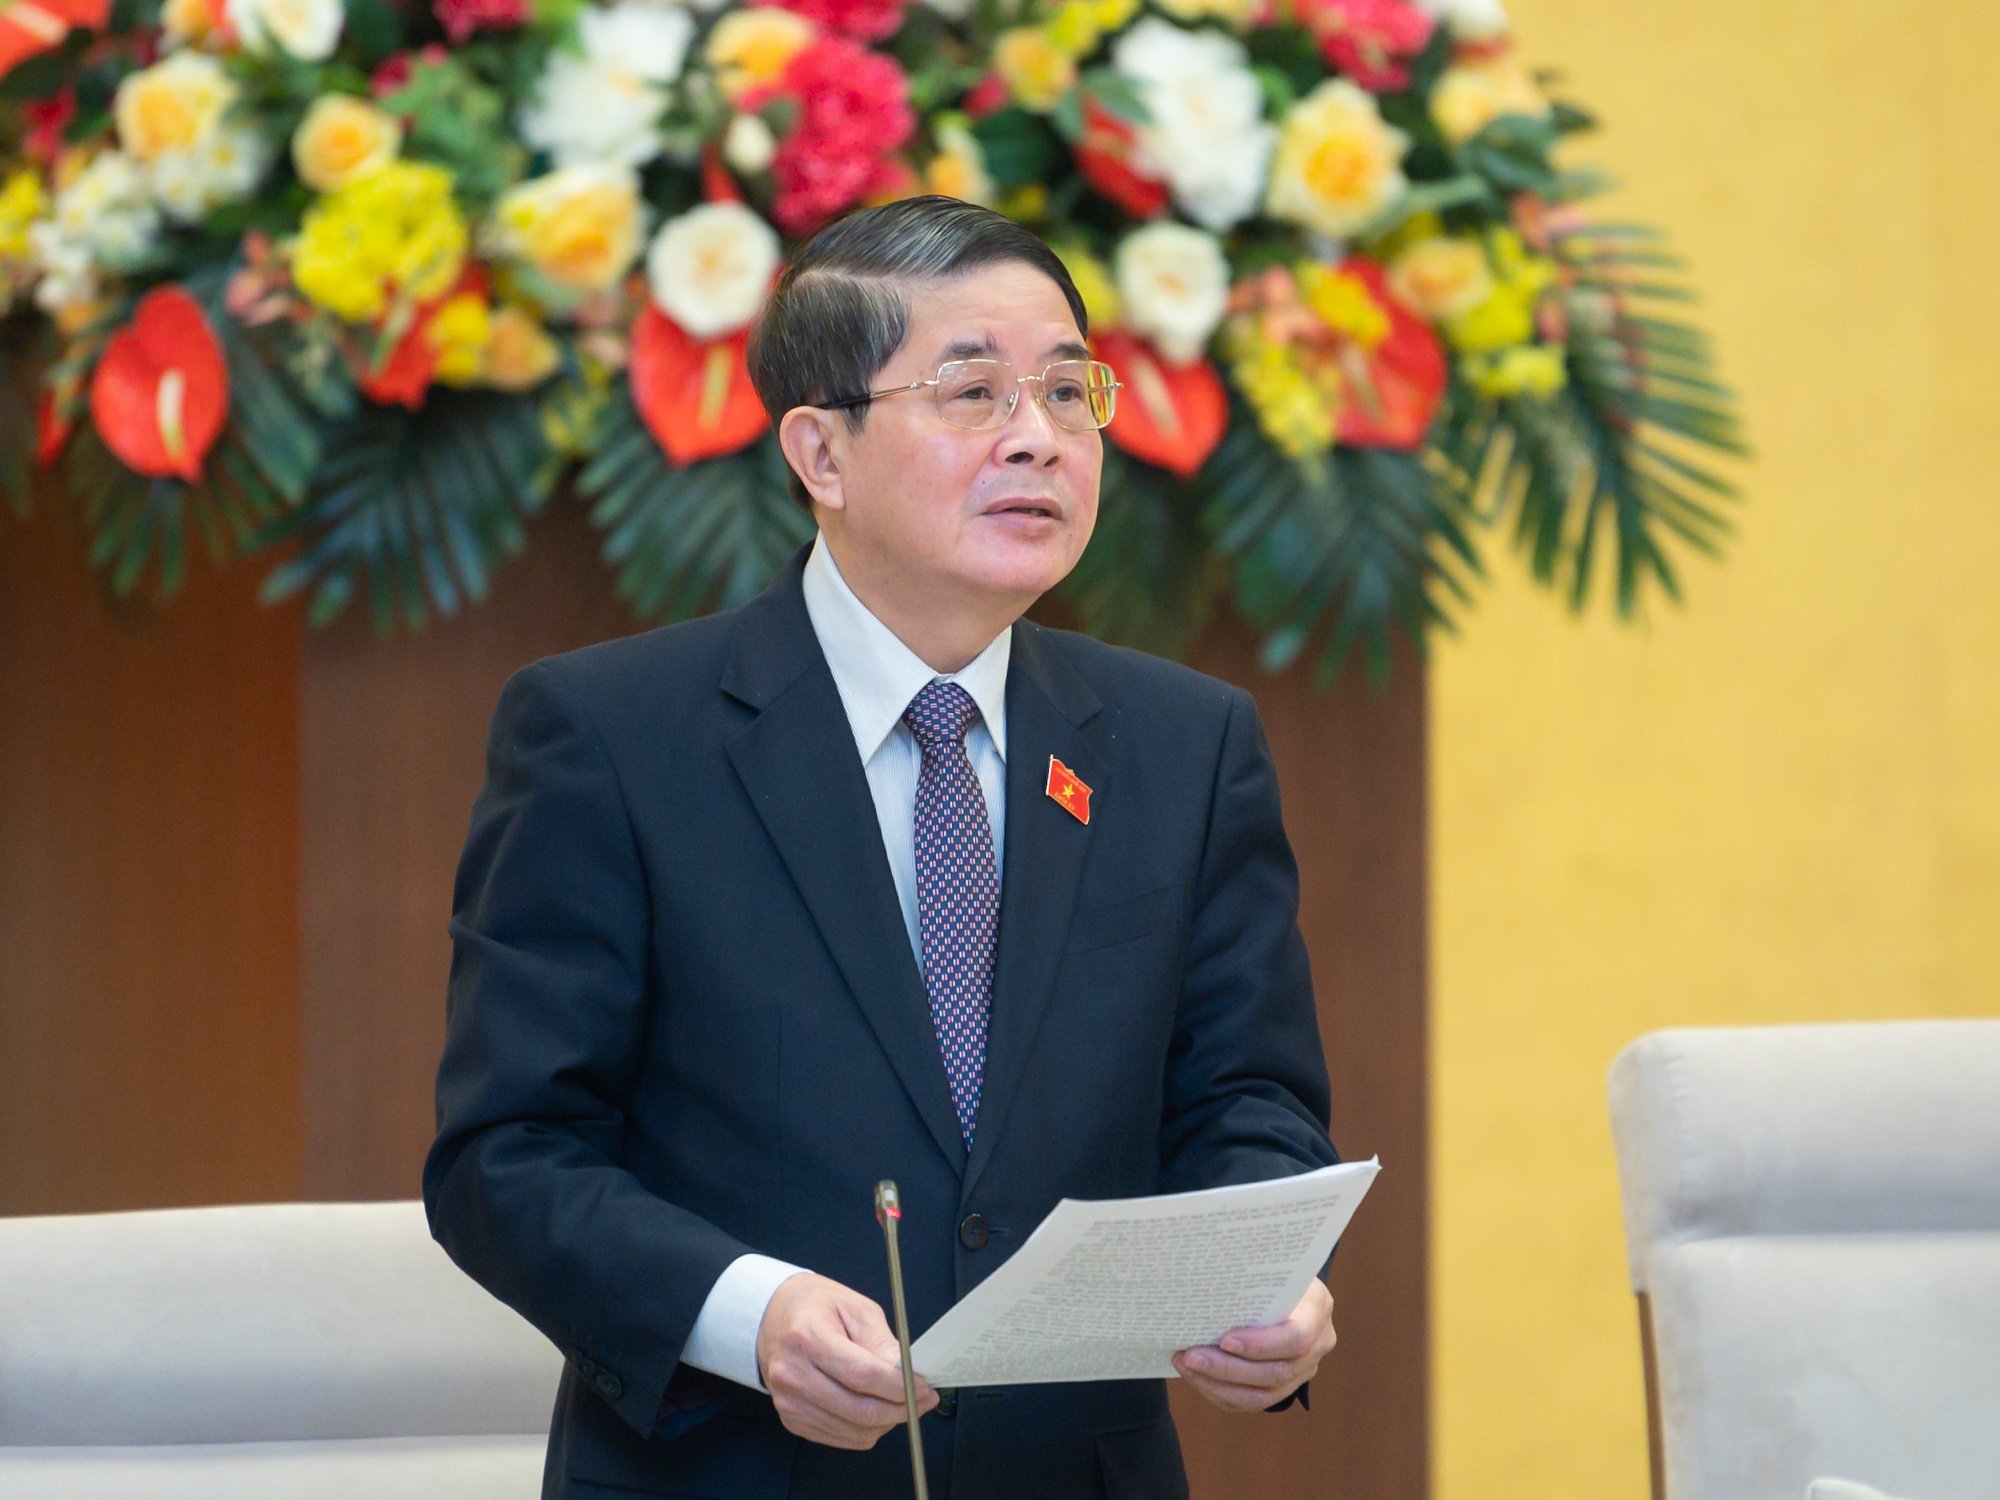 Phó Chủ tịch Quốc hội Nguyễn Đức Hải cho rằng, nếu không thuyết minh thuyết phục được về tính hiệu quả, minh bạch của Quỹ bình ổn giá xăng dầu thì nên xem xét không tiếp tục duy trì